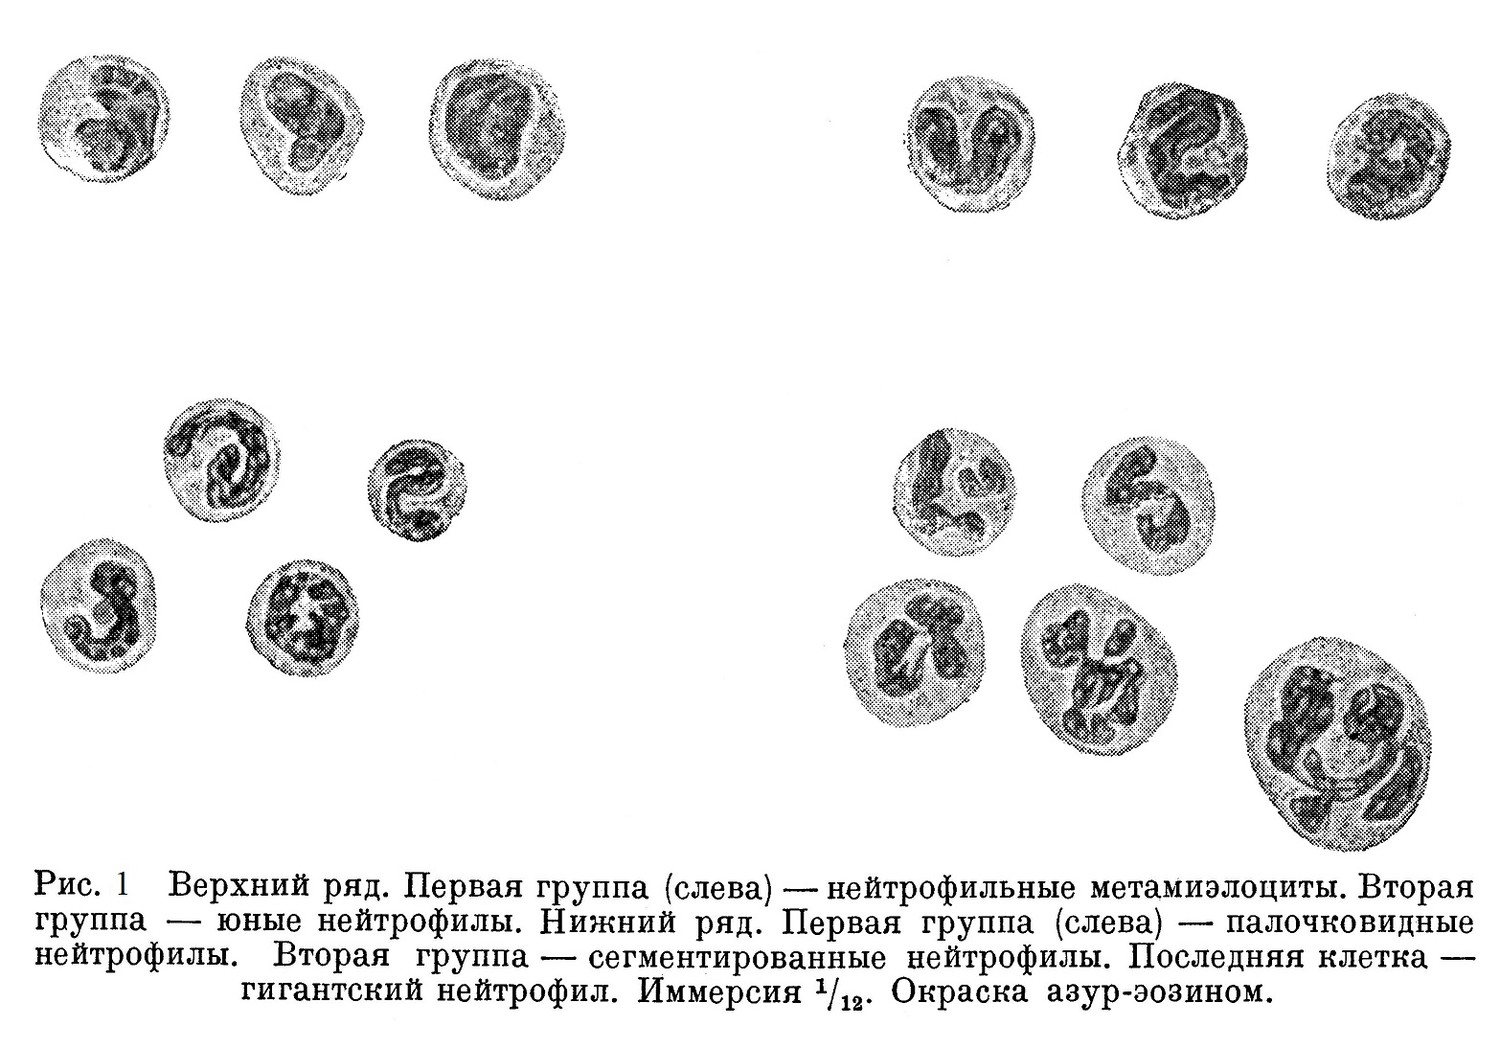 Верхний ряд. Первая группа (слева) — нейтрофильные метамиэлоциты. Вторая группа — юные нейтрофилы. Нижний ряд. Первая группа (слева) — палочковидные нейтрофилы. Вторая группа — сегментированные нейтрофилы. Последняя клетка — гигантский нейтрофил. 